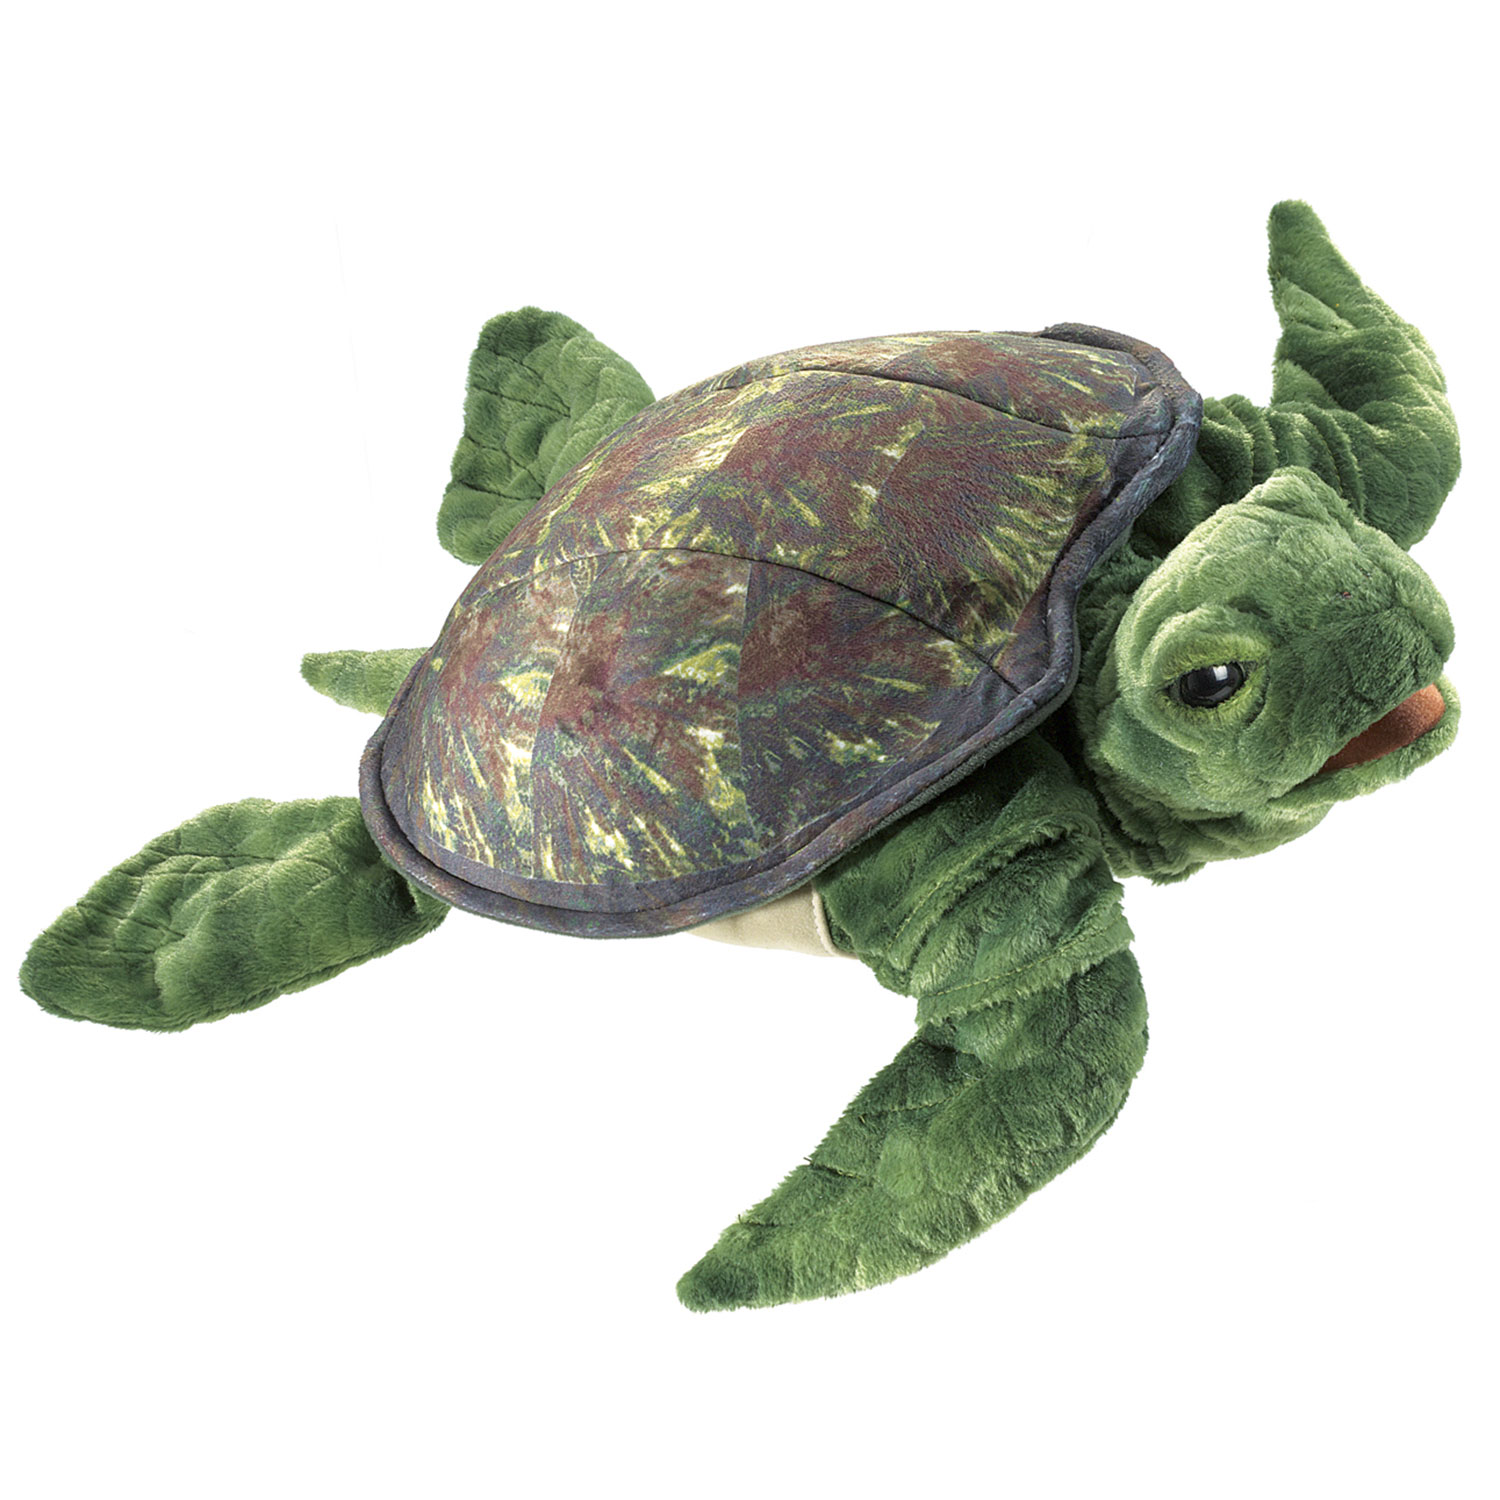 Meeresschildkröte / Sea Turtle